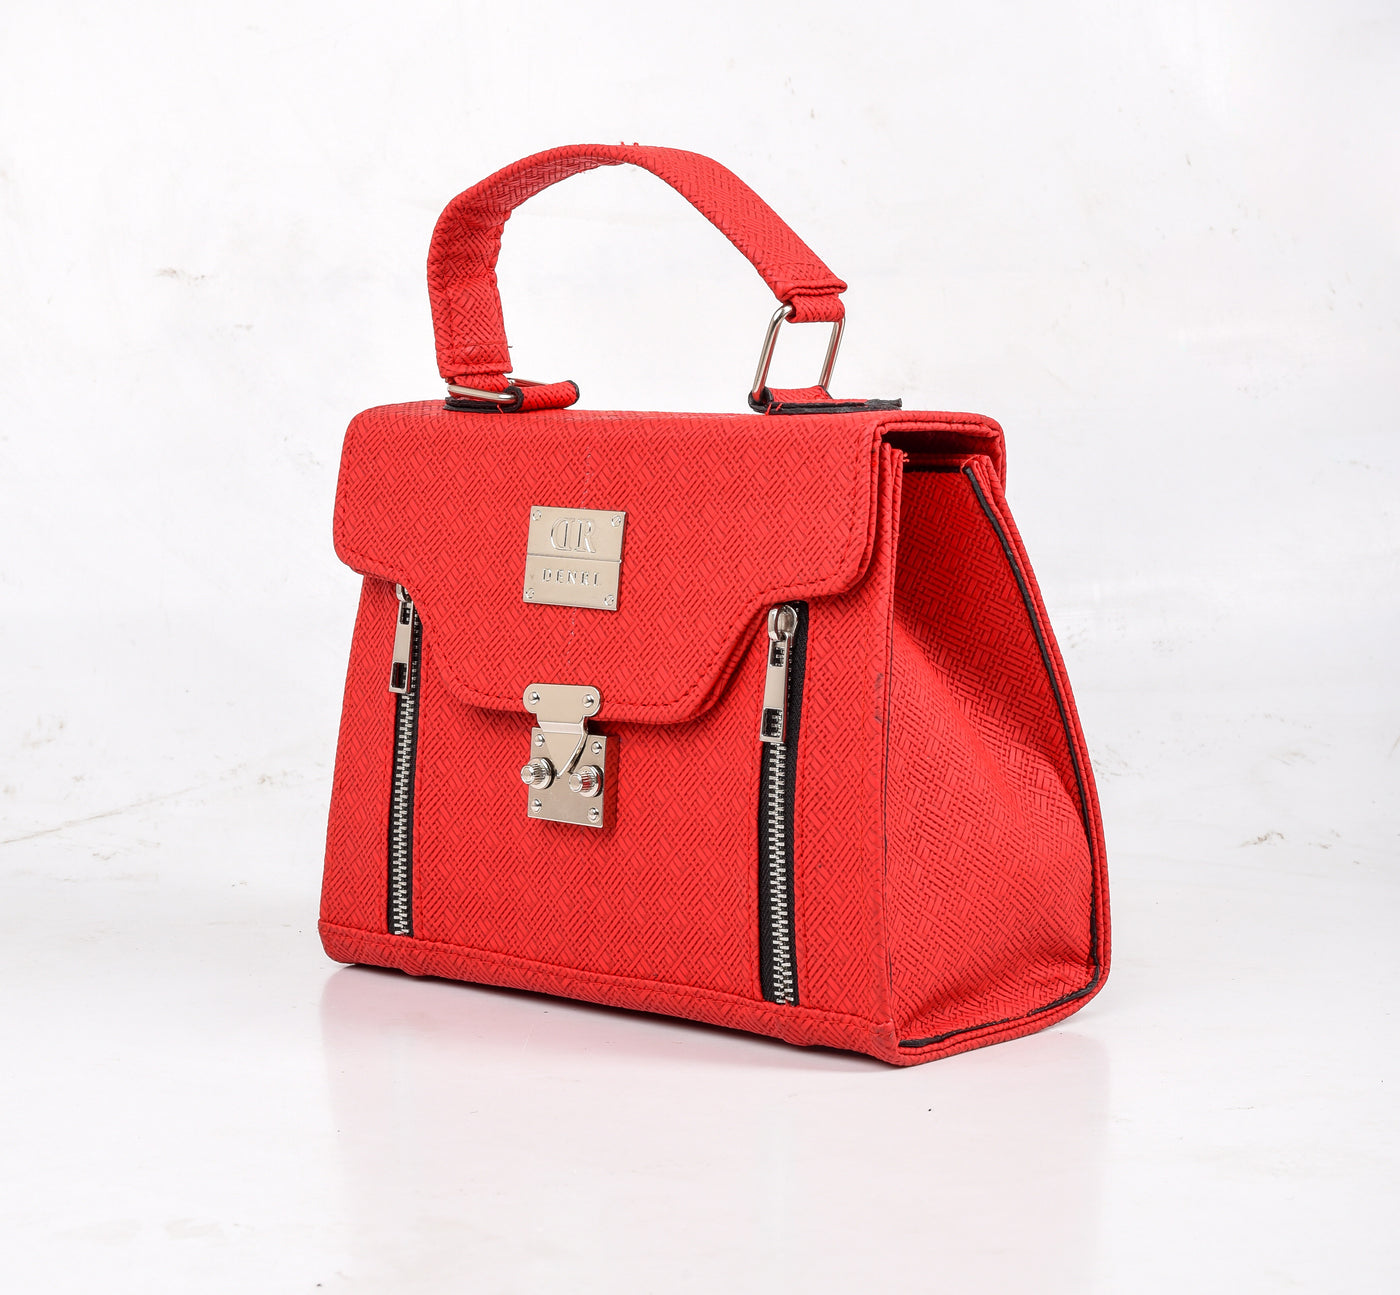 Karina Pattern Red Handbag